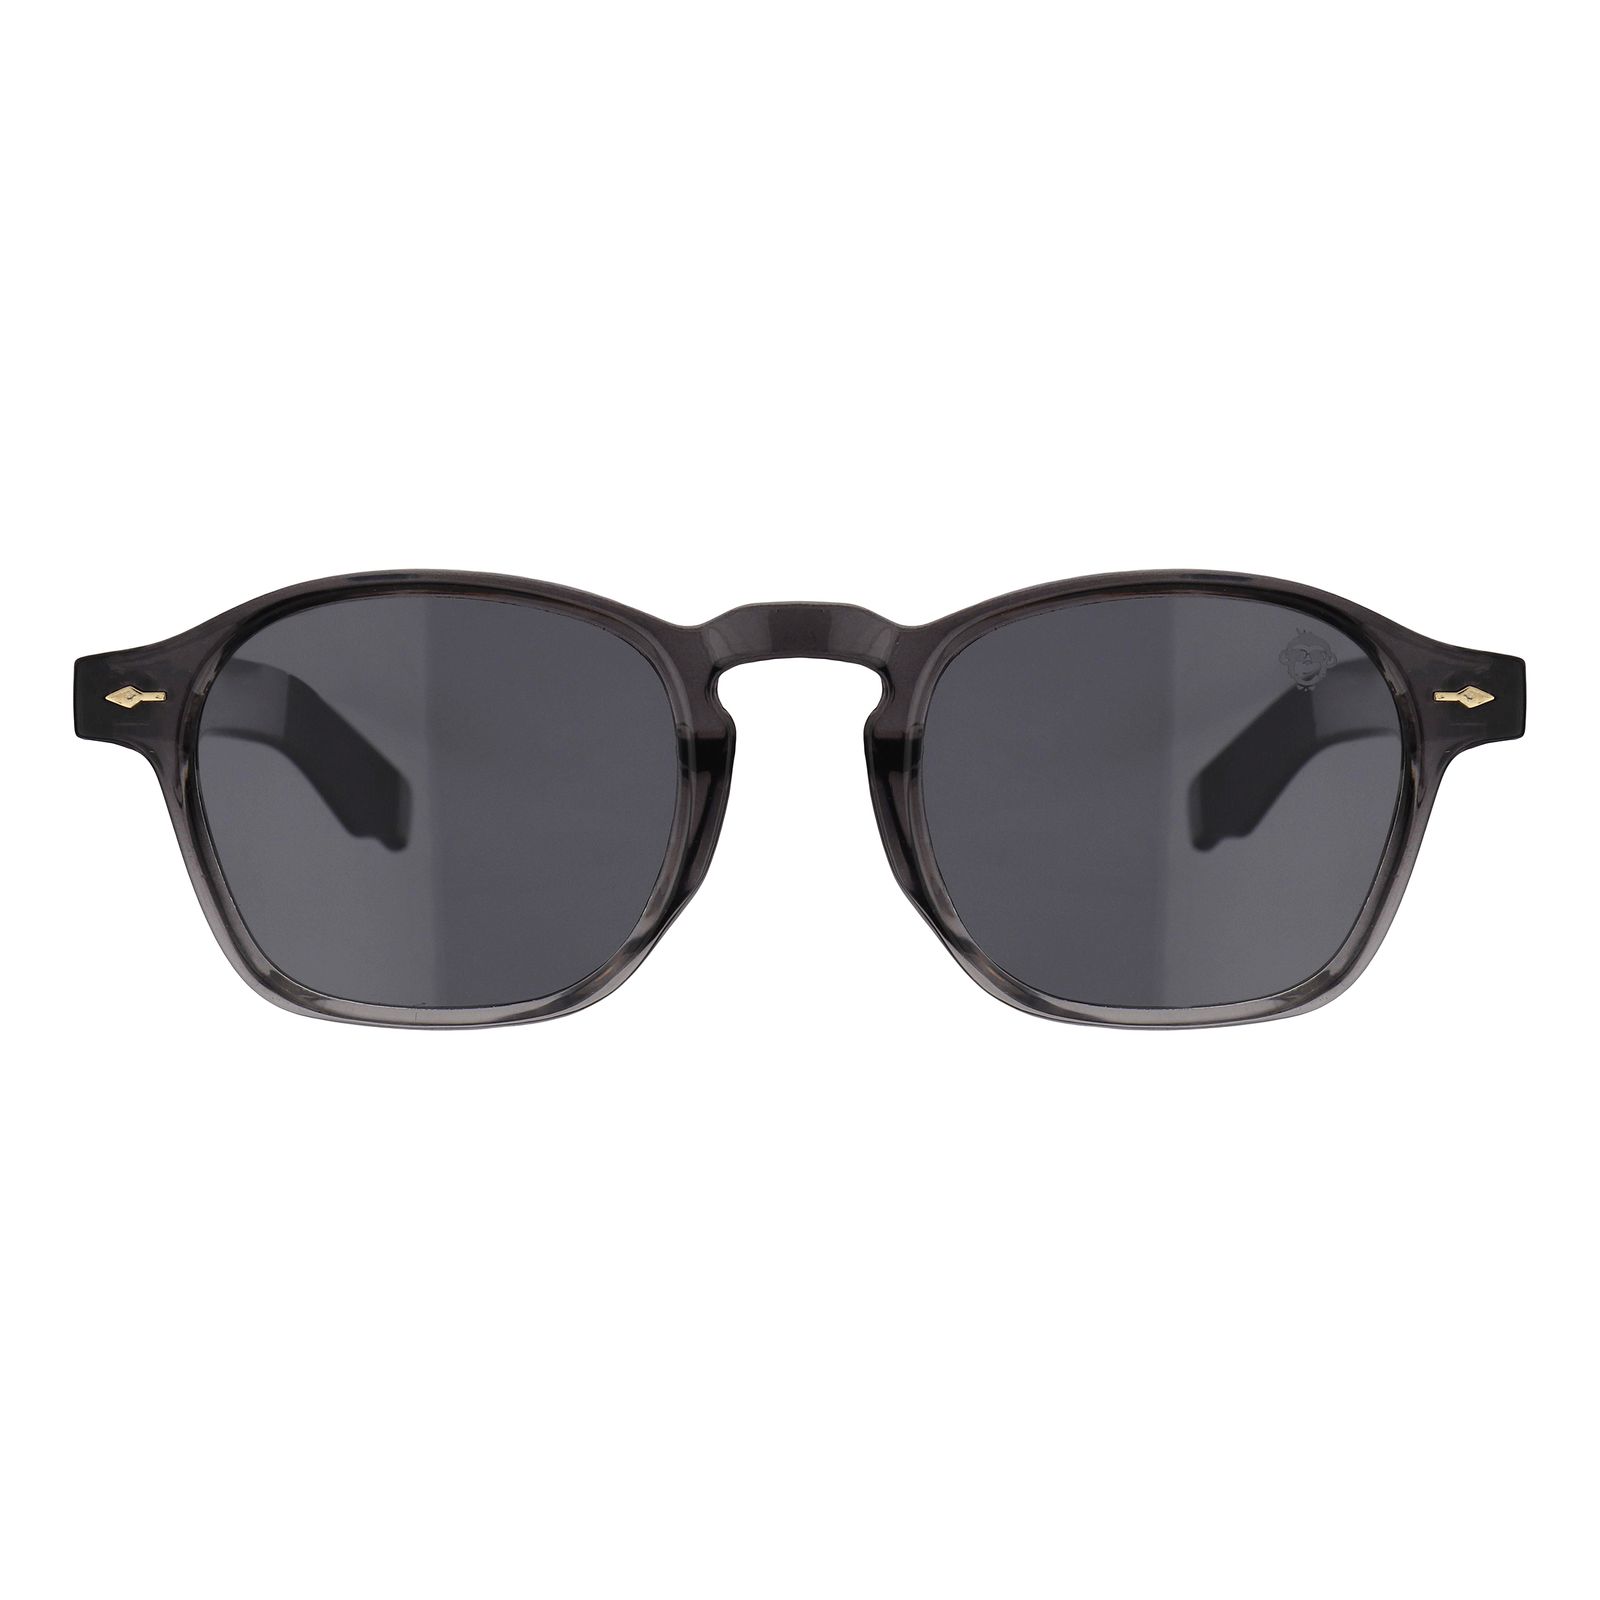 عینک آفتابی مستر مانکی مدل 6013 gr -  - 1